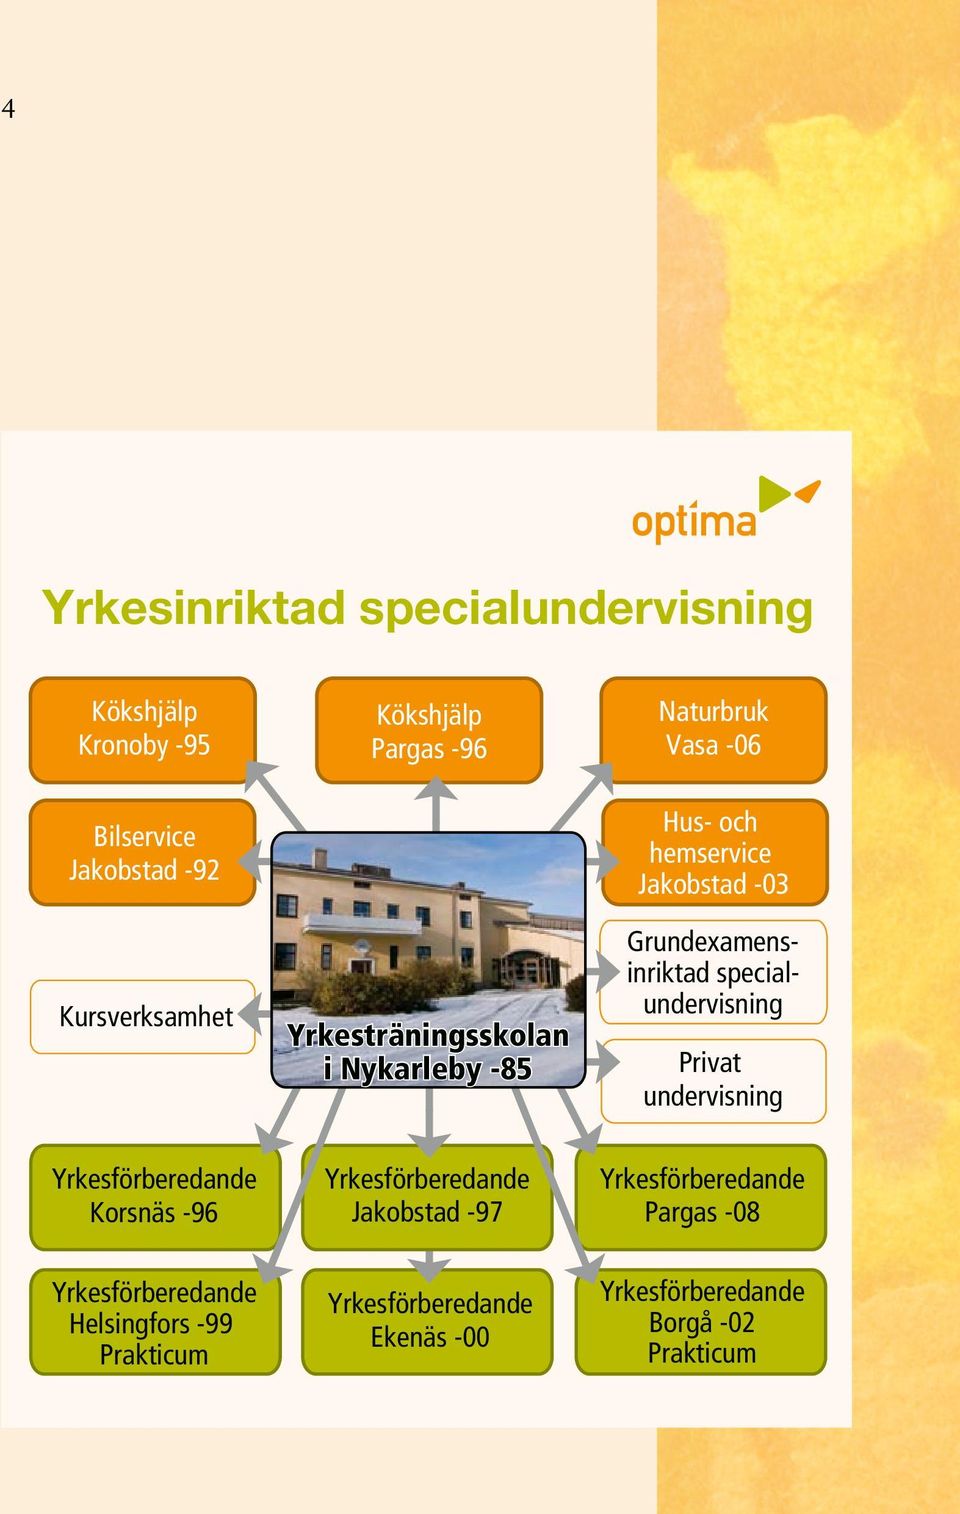 specialundervisning Privat undervisning Yrkesförberedande Korsnäs -96 Yrkesförberedande Jakobstad -97